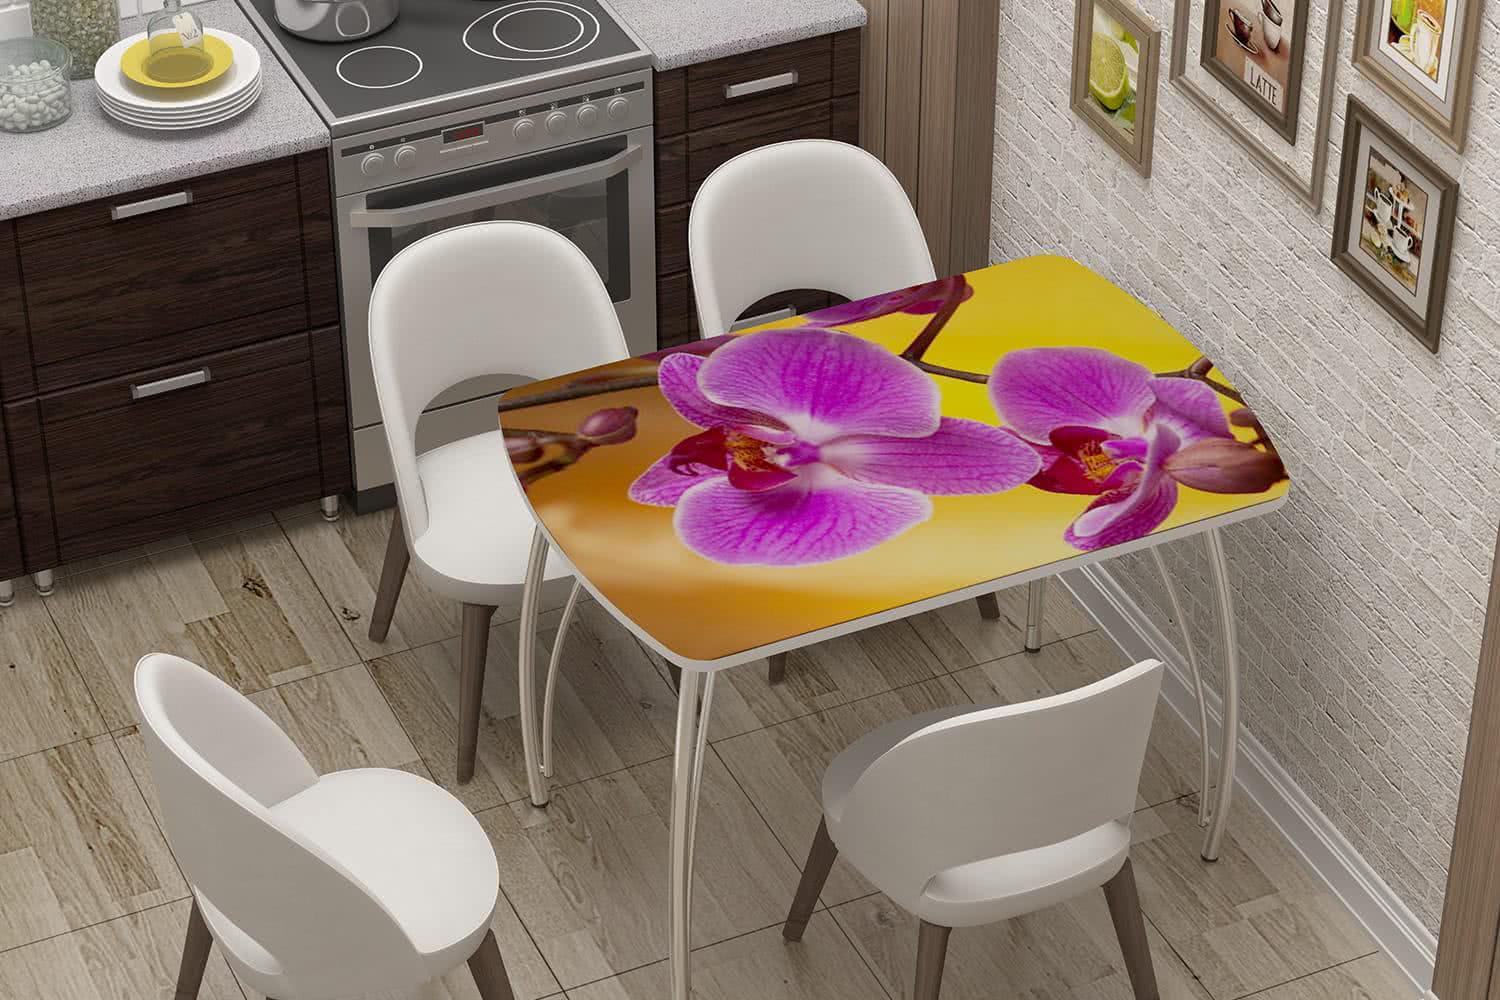 Кухонные столы рязань. Стол регион 058 бочонок нераздвижной. Стол "регион 058" бочонок раздвижной. Стол кухонный Бриз нераздвижной. Стол Орхидея Браво мебель.